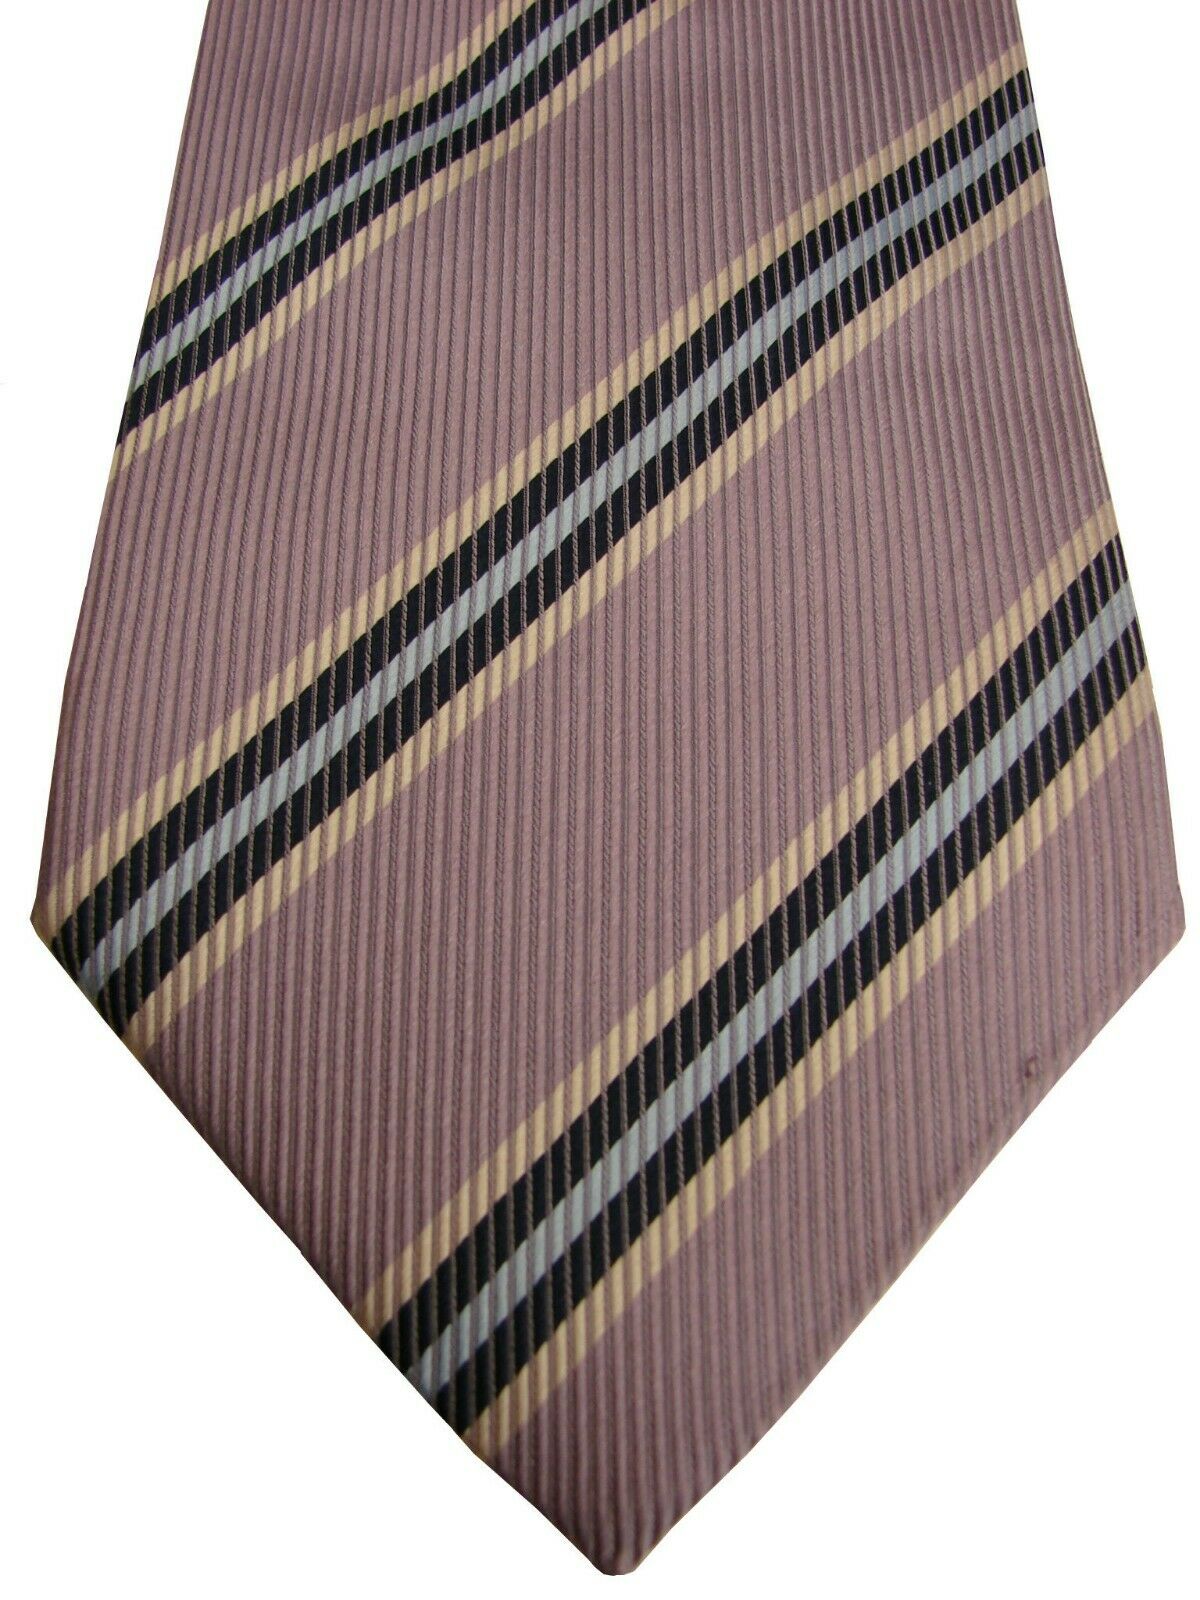 GANT USA Mens Tie Lilac Grey - Stripes - Brandinity